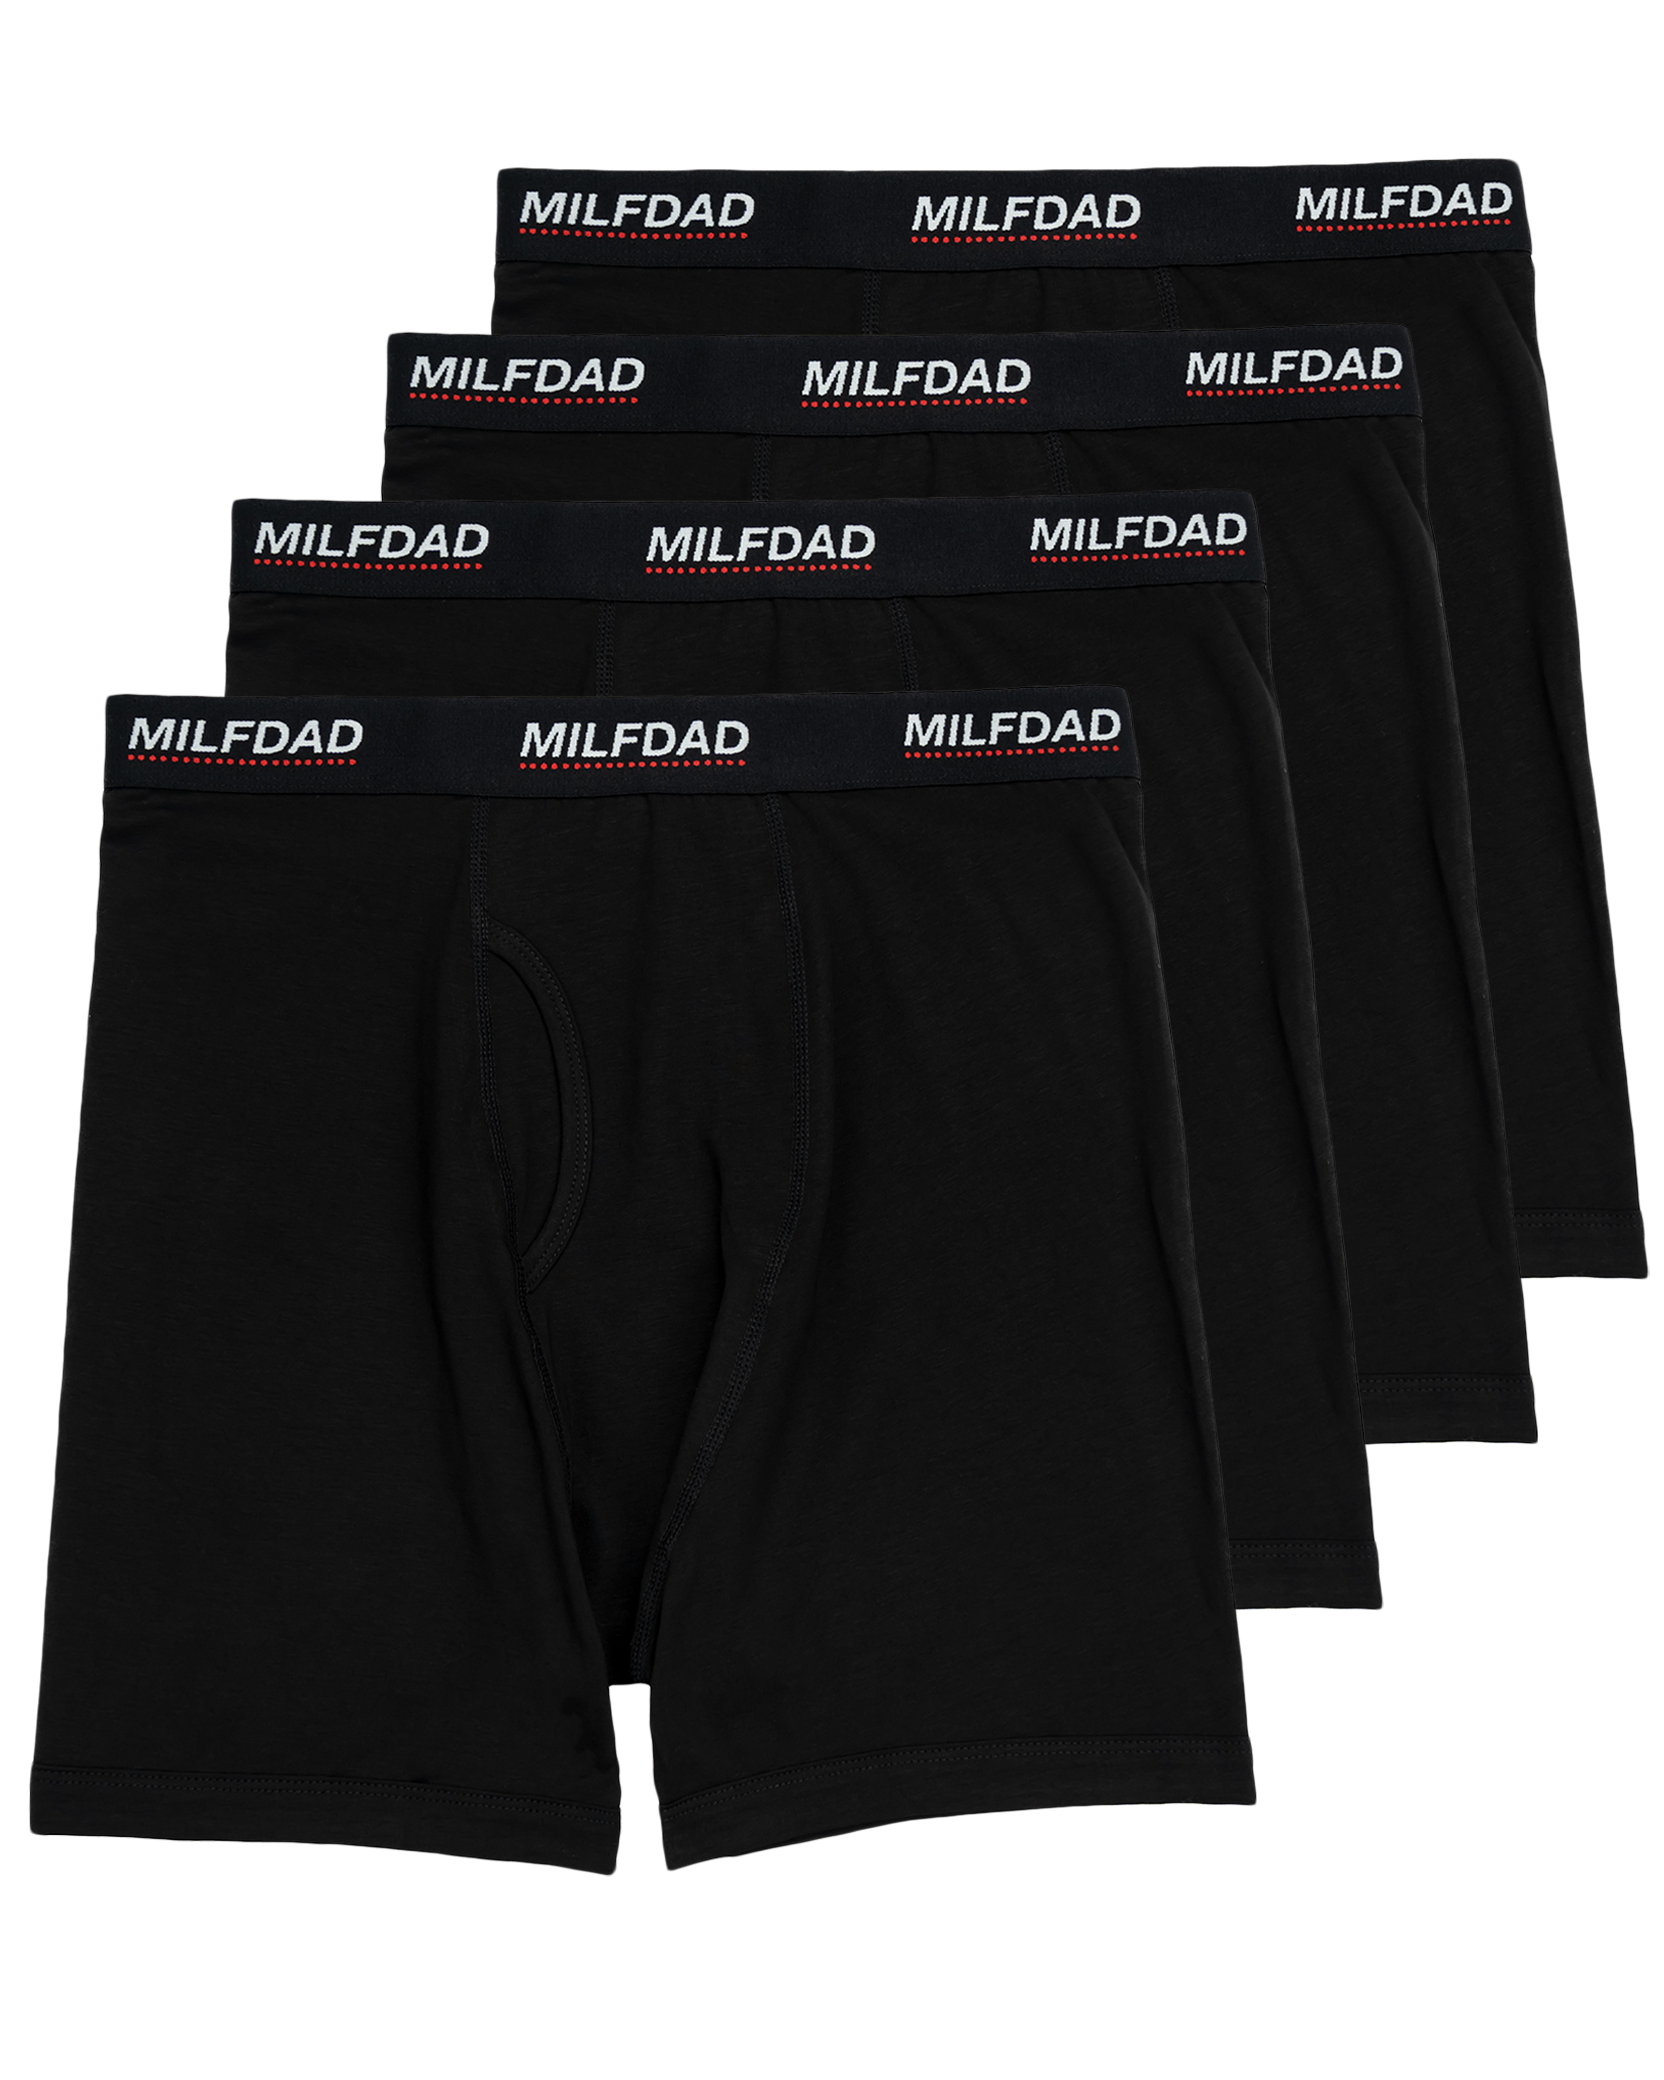 Milfdad Boxer Briefs 4-Pack